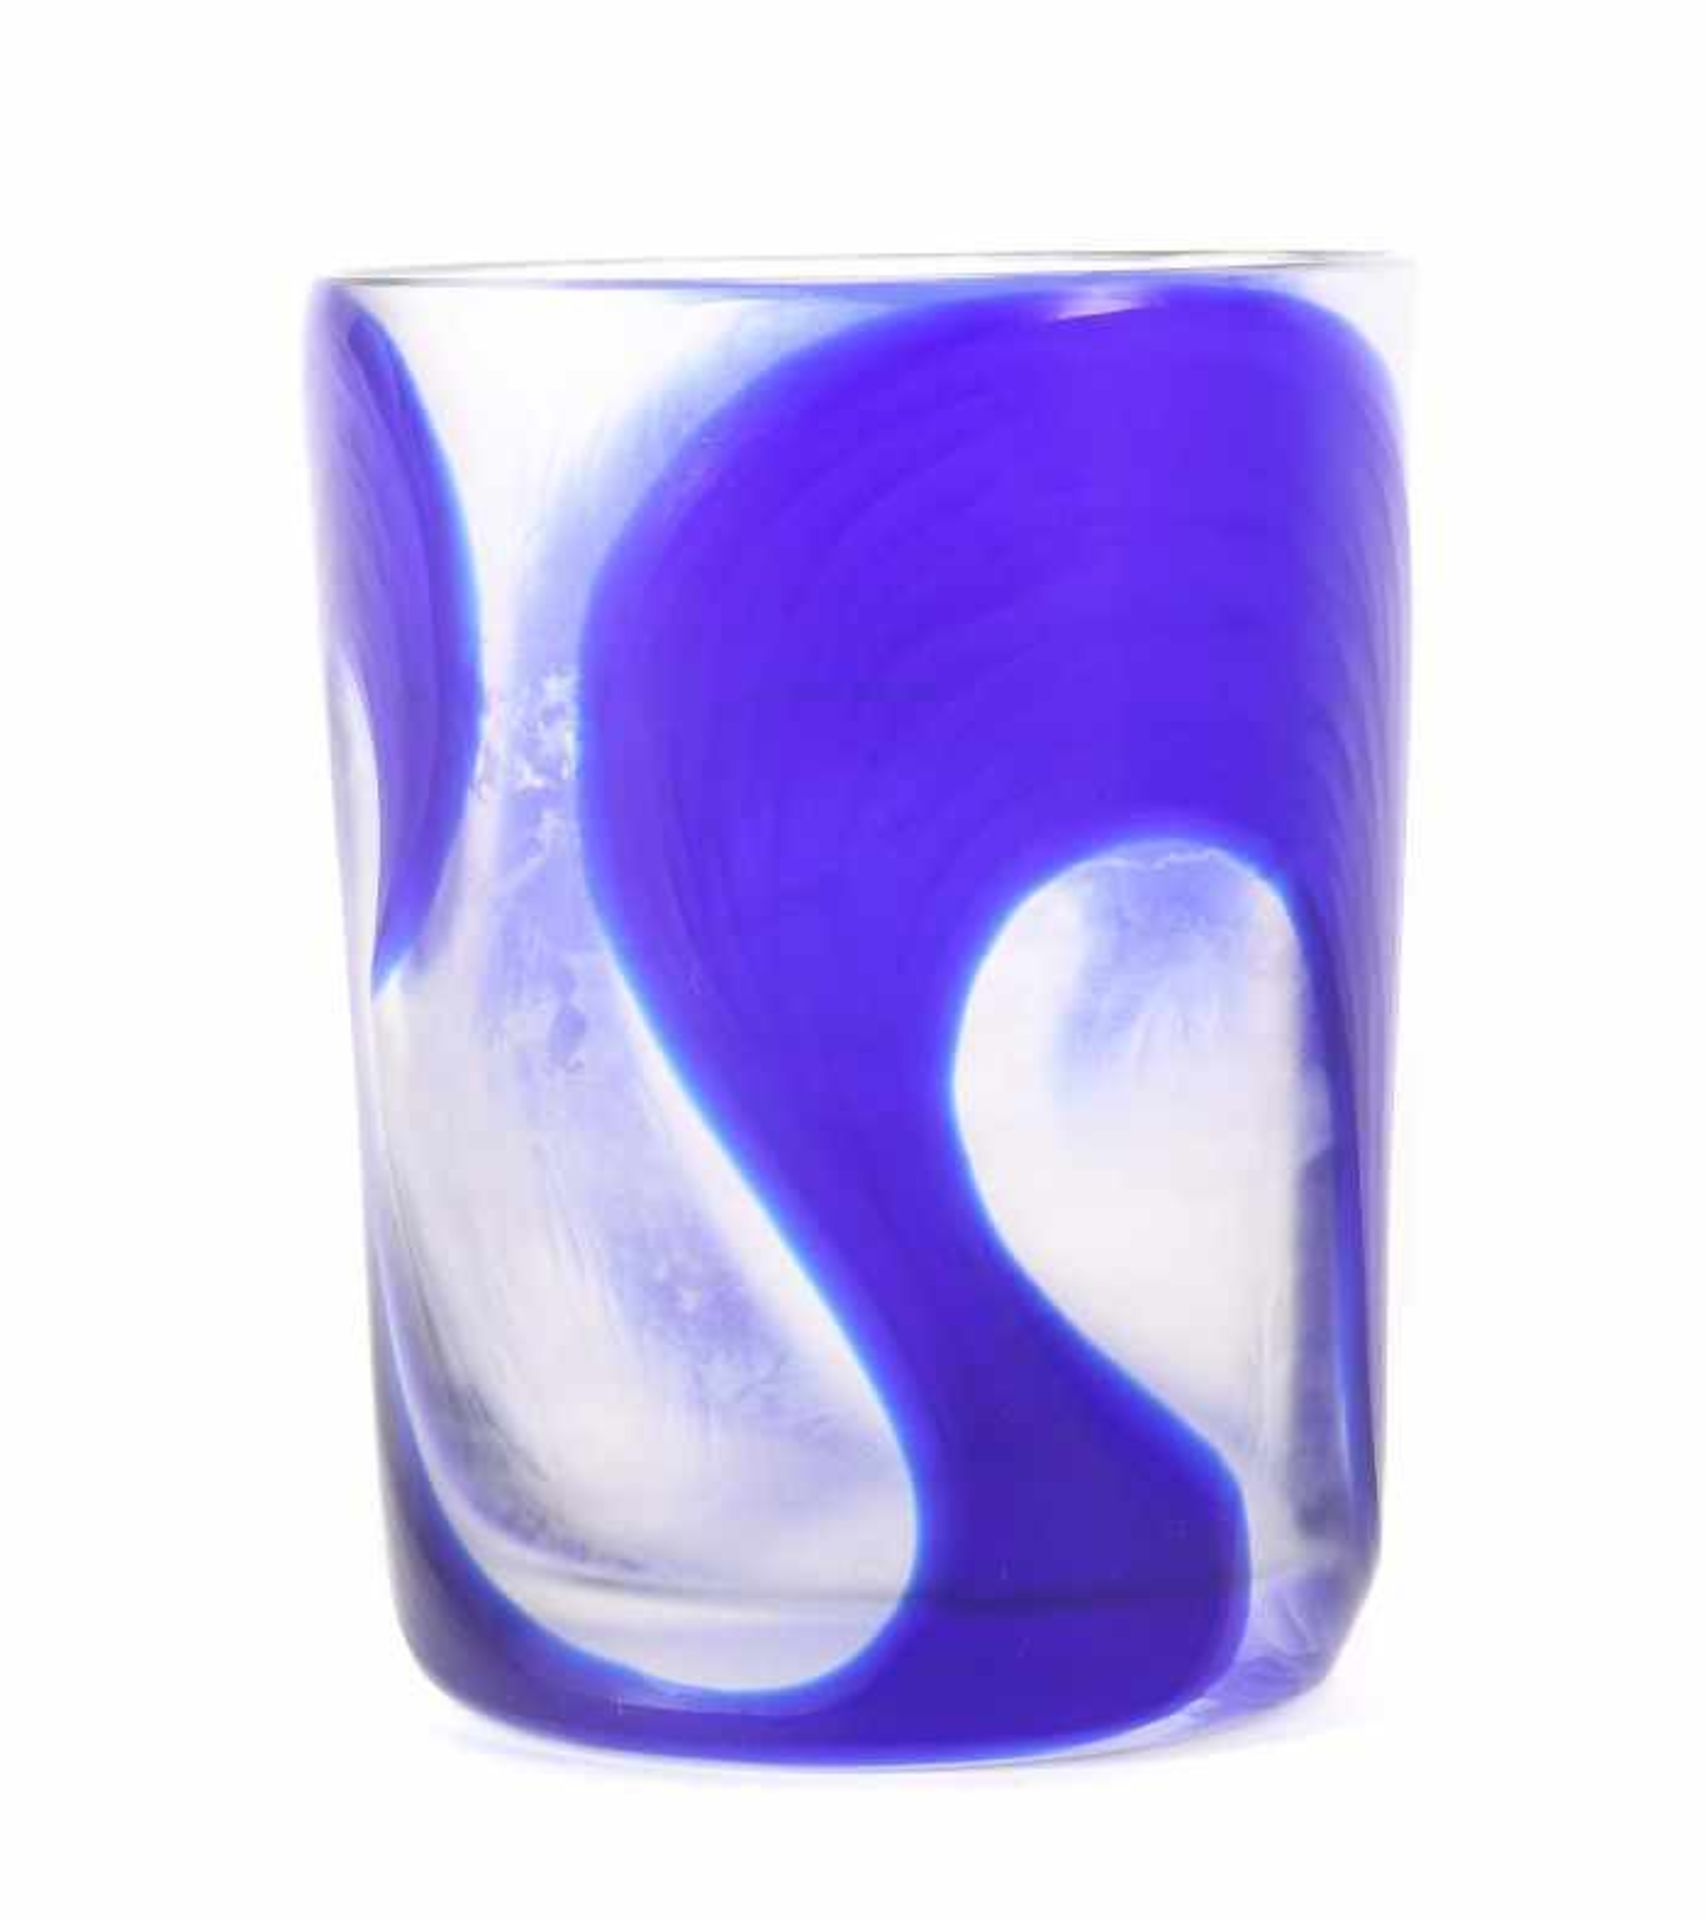 BecherEnde 20. Jh., farbloses Glas, blau überfangen und matt geschliffen, unregelmäßiges,breites